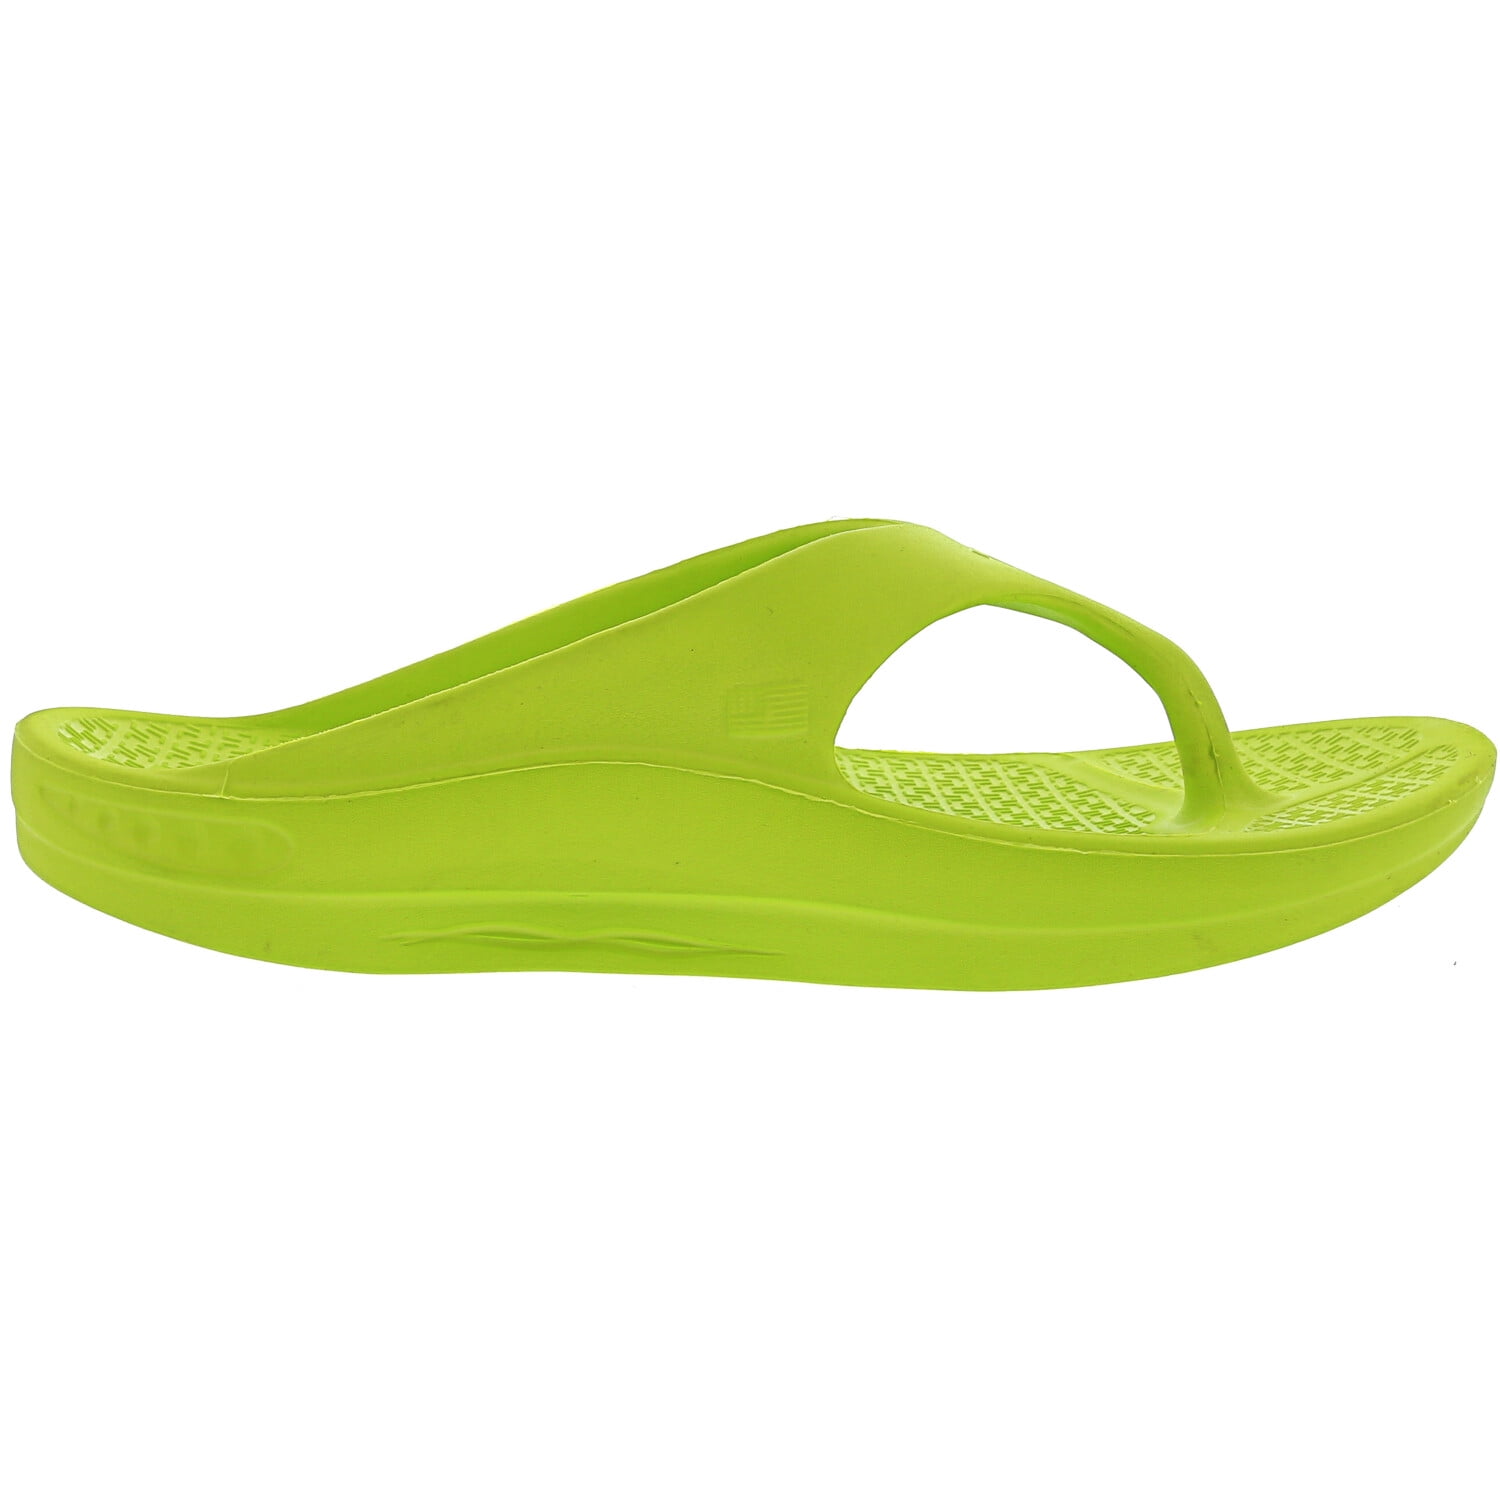 Telic Terox Flip Flop Sandal Shoes Color Key Lime